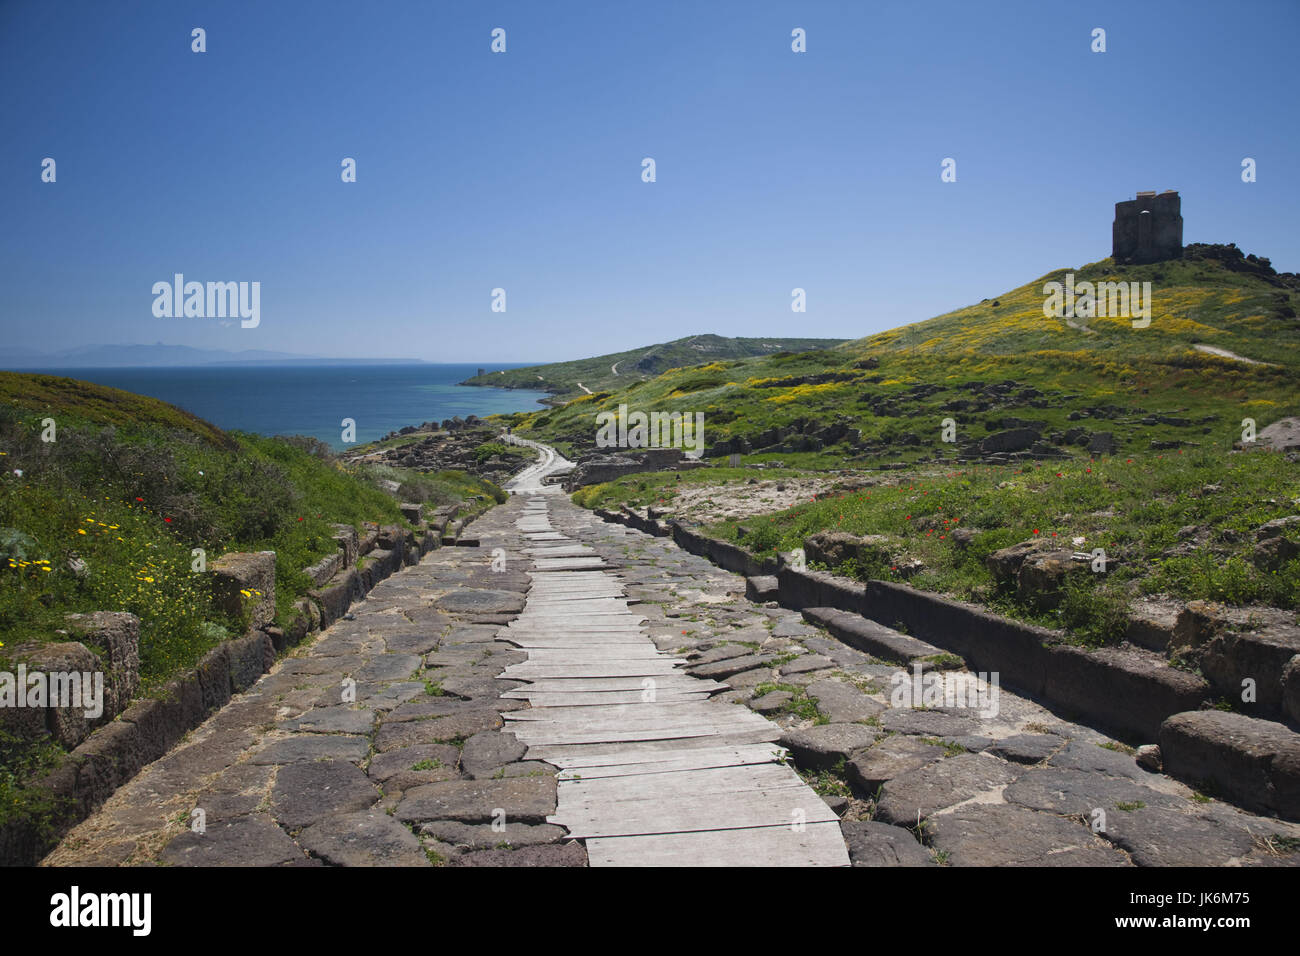 L'Italia, Sardegna, regione di Oristano, la penisola del Sinis, Tharros, rovine dell antica città fenicia, Cardus Maximus road Foto Stock